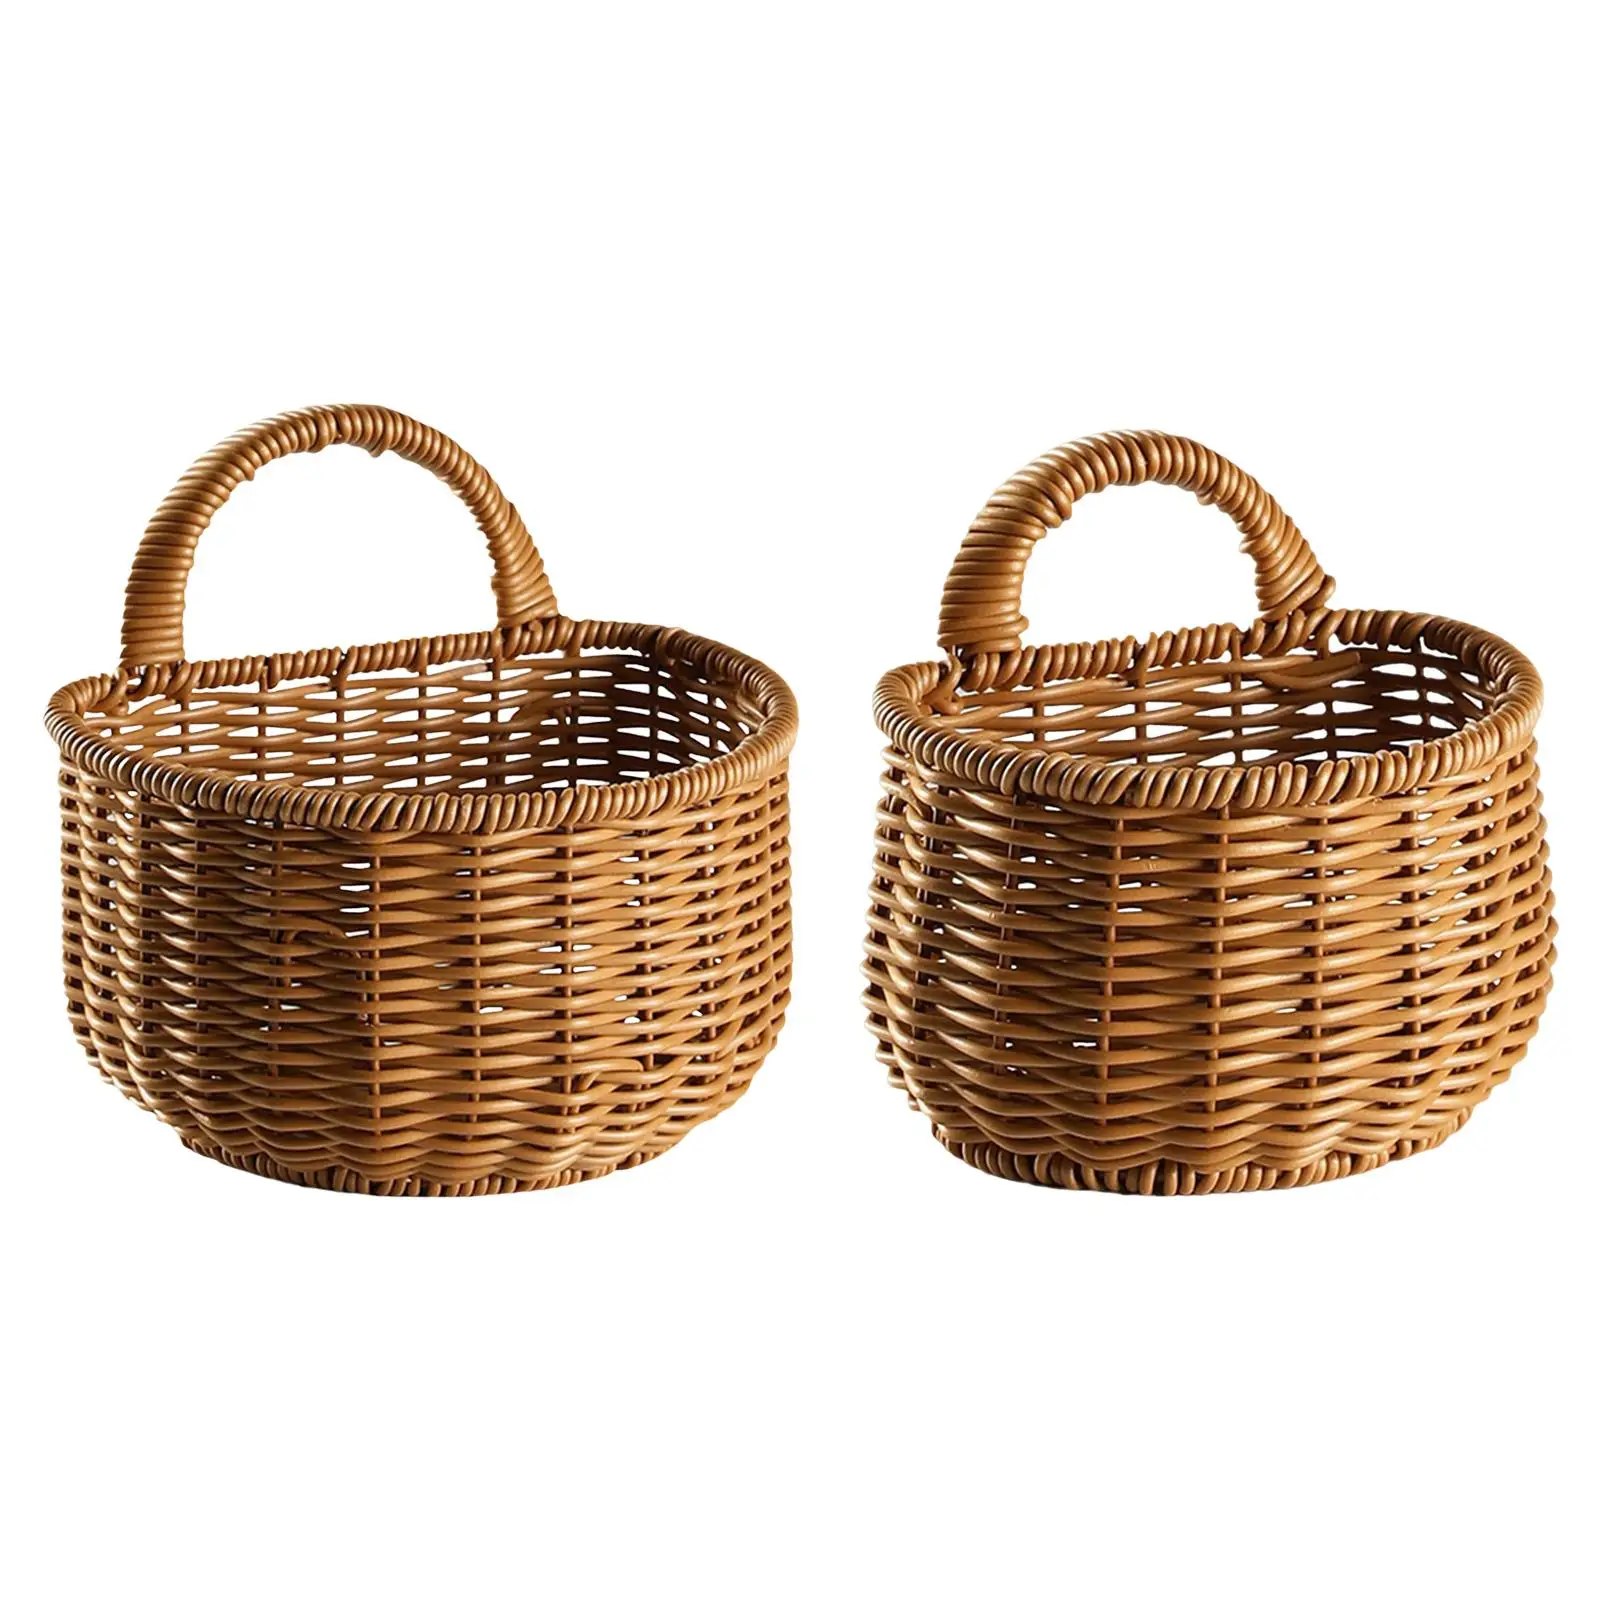 Woven Hanging Baskets Kitchen Storage Basket Organizer Plants Holder with Handle